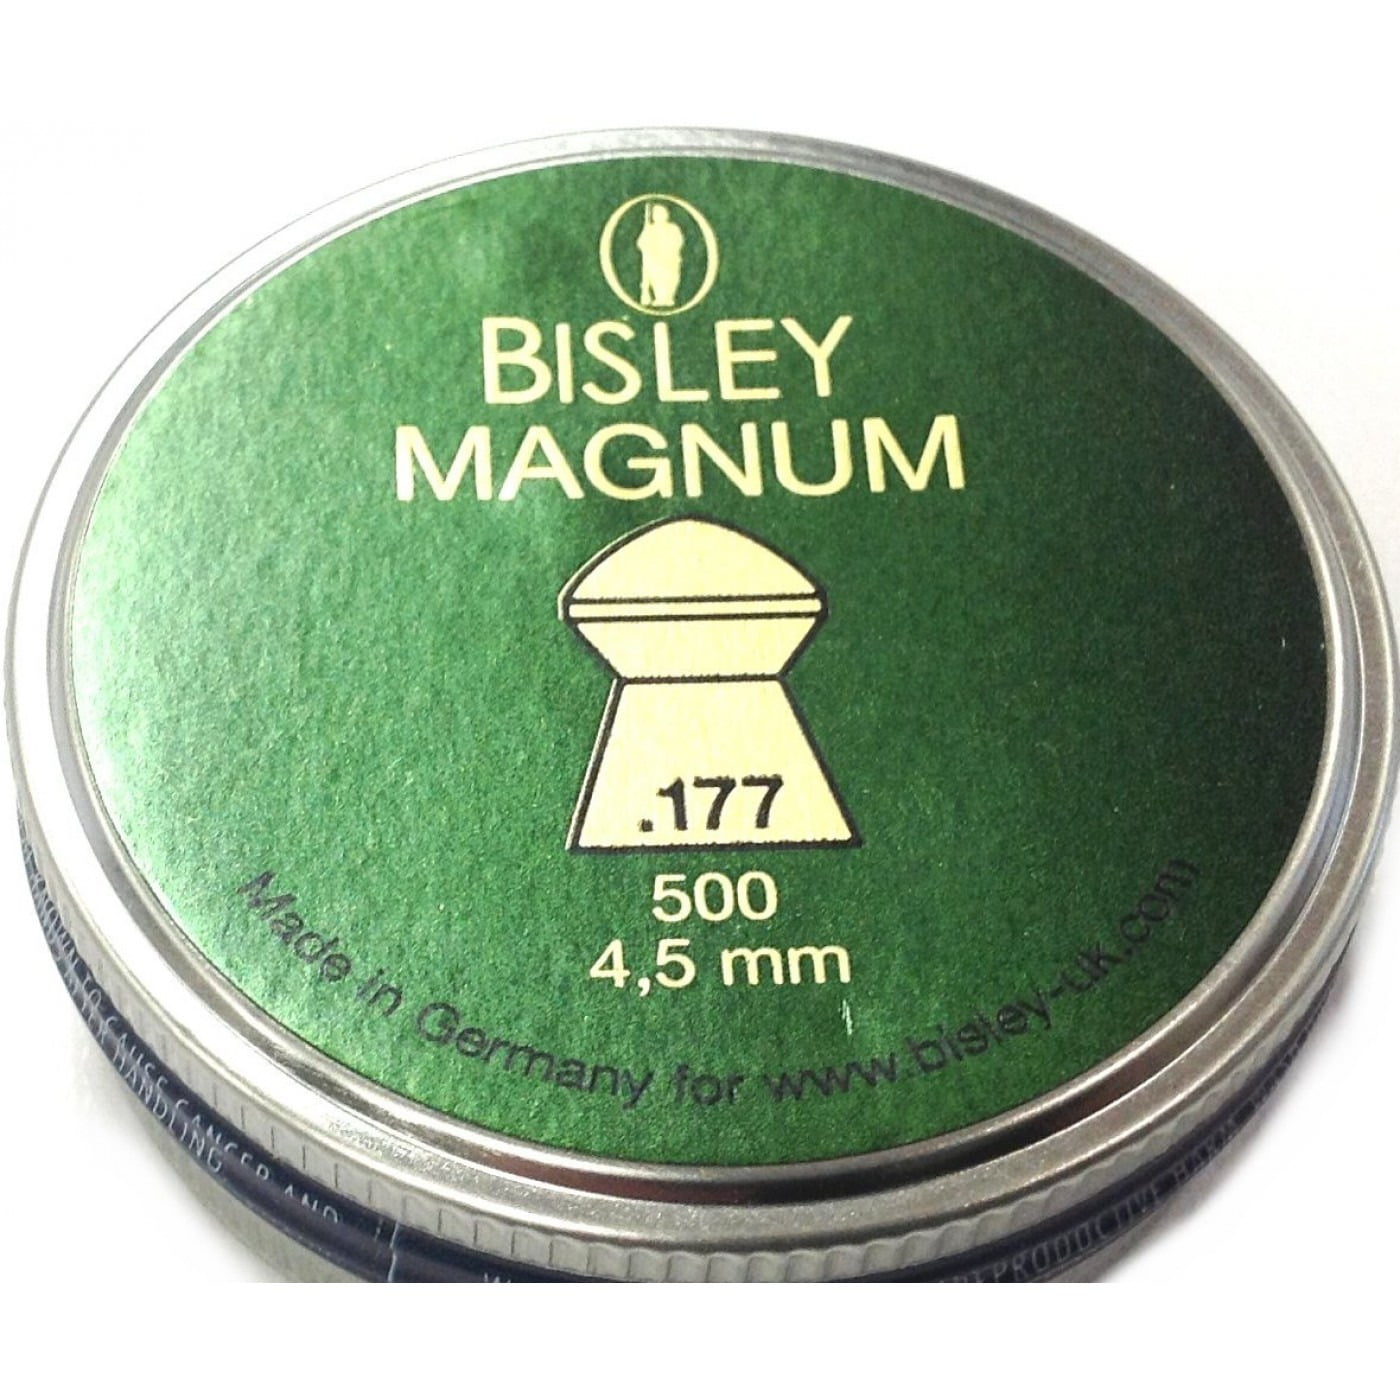 Bisley Magnum .177 (4.5mm)